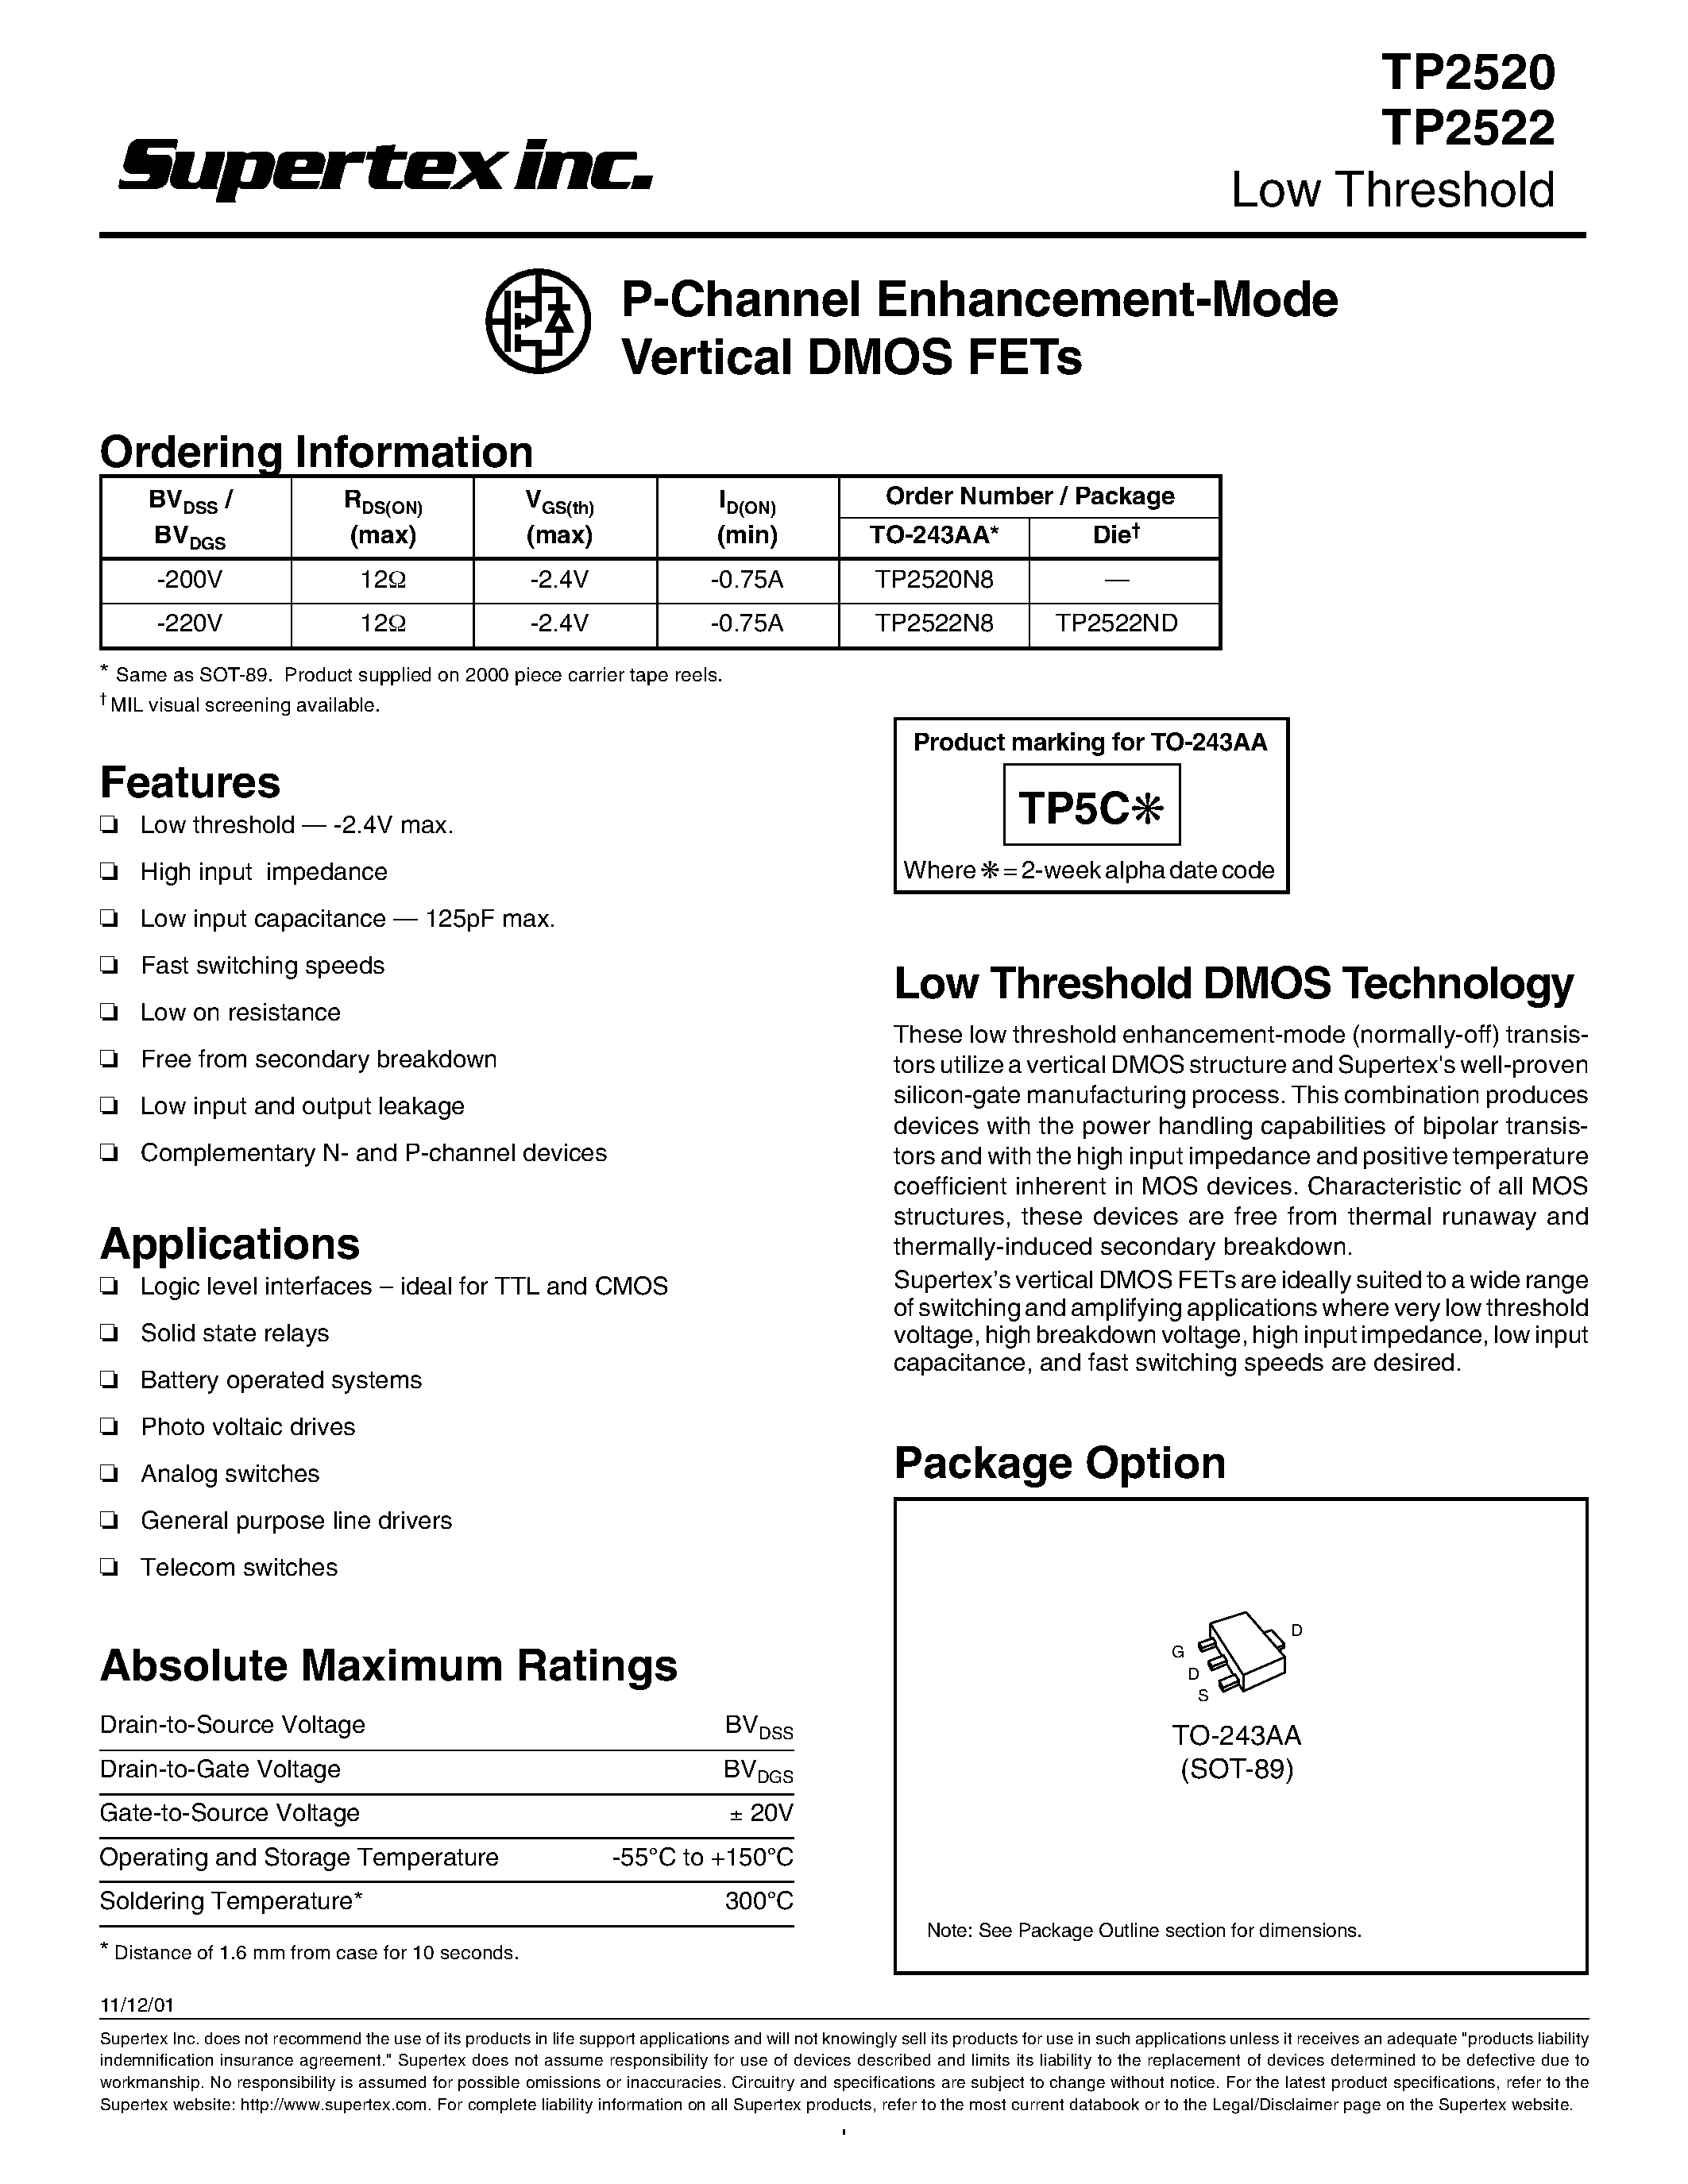 Datasheet TP2520 - P-Channel Enhancement-Mode Vertical DMOS FETs page 1